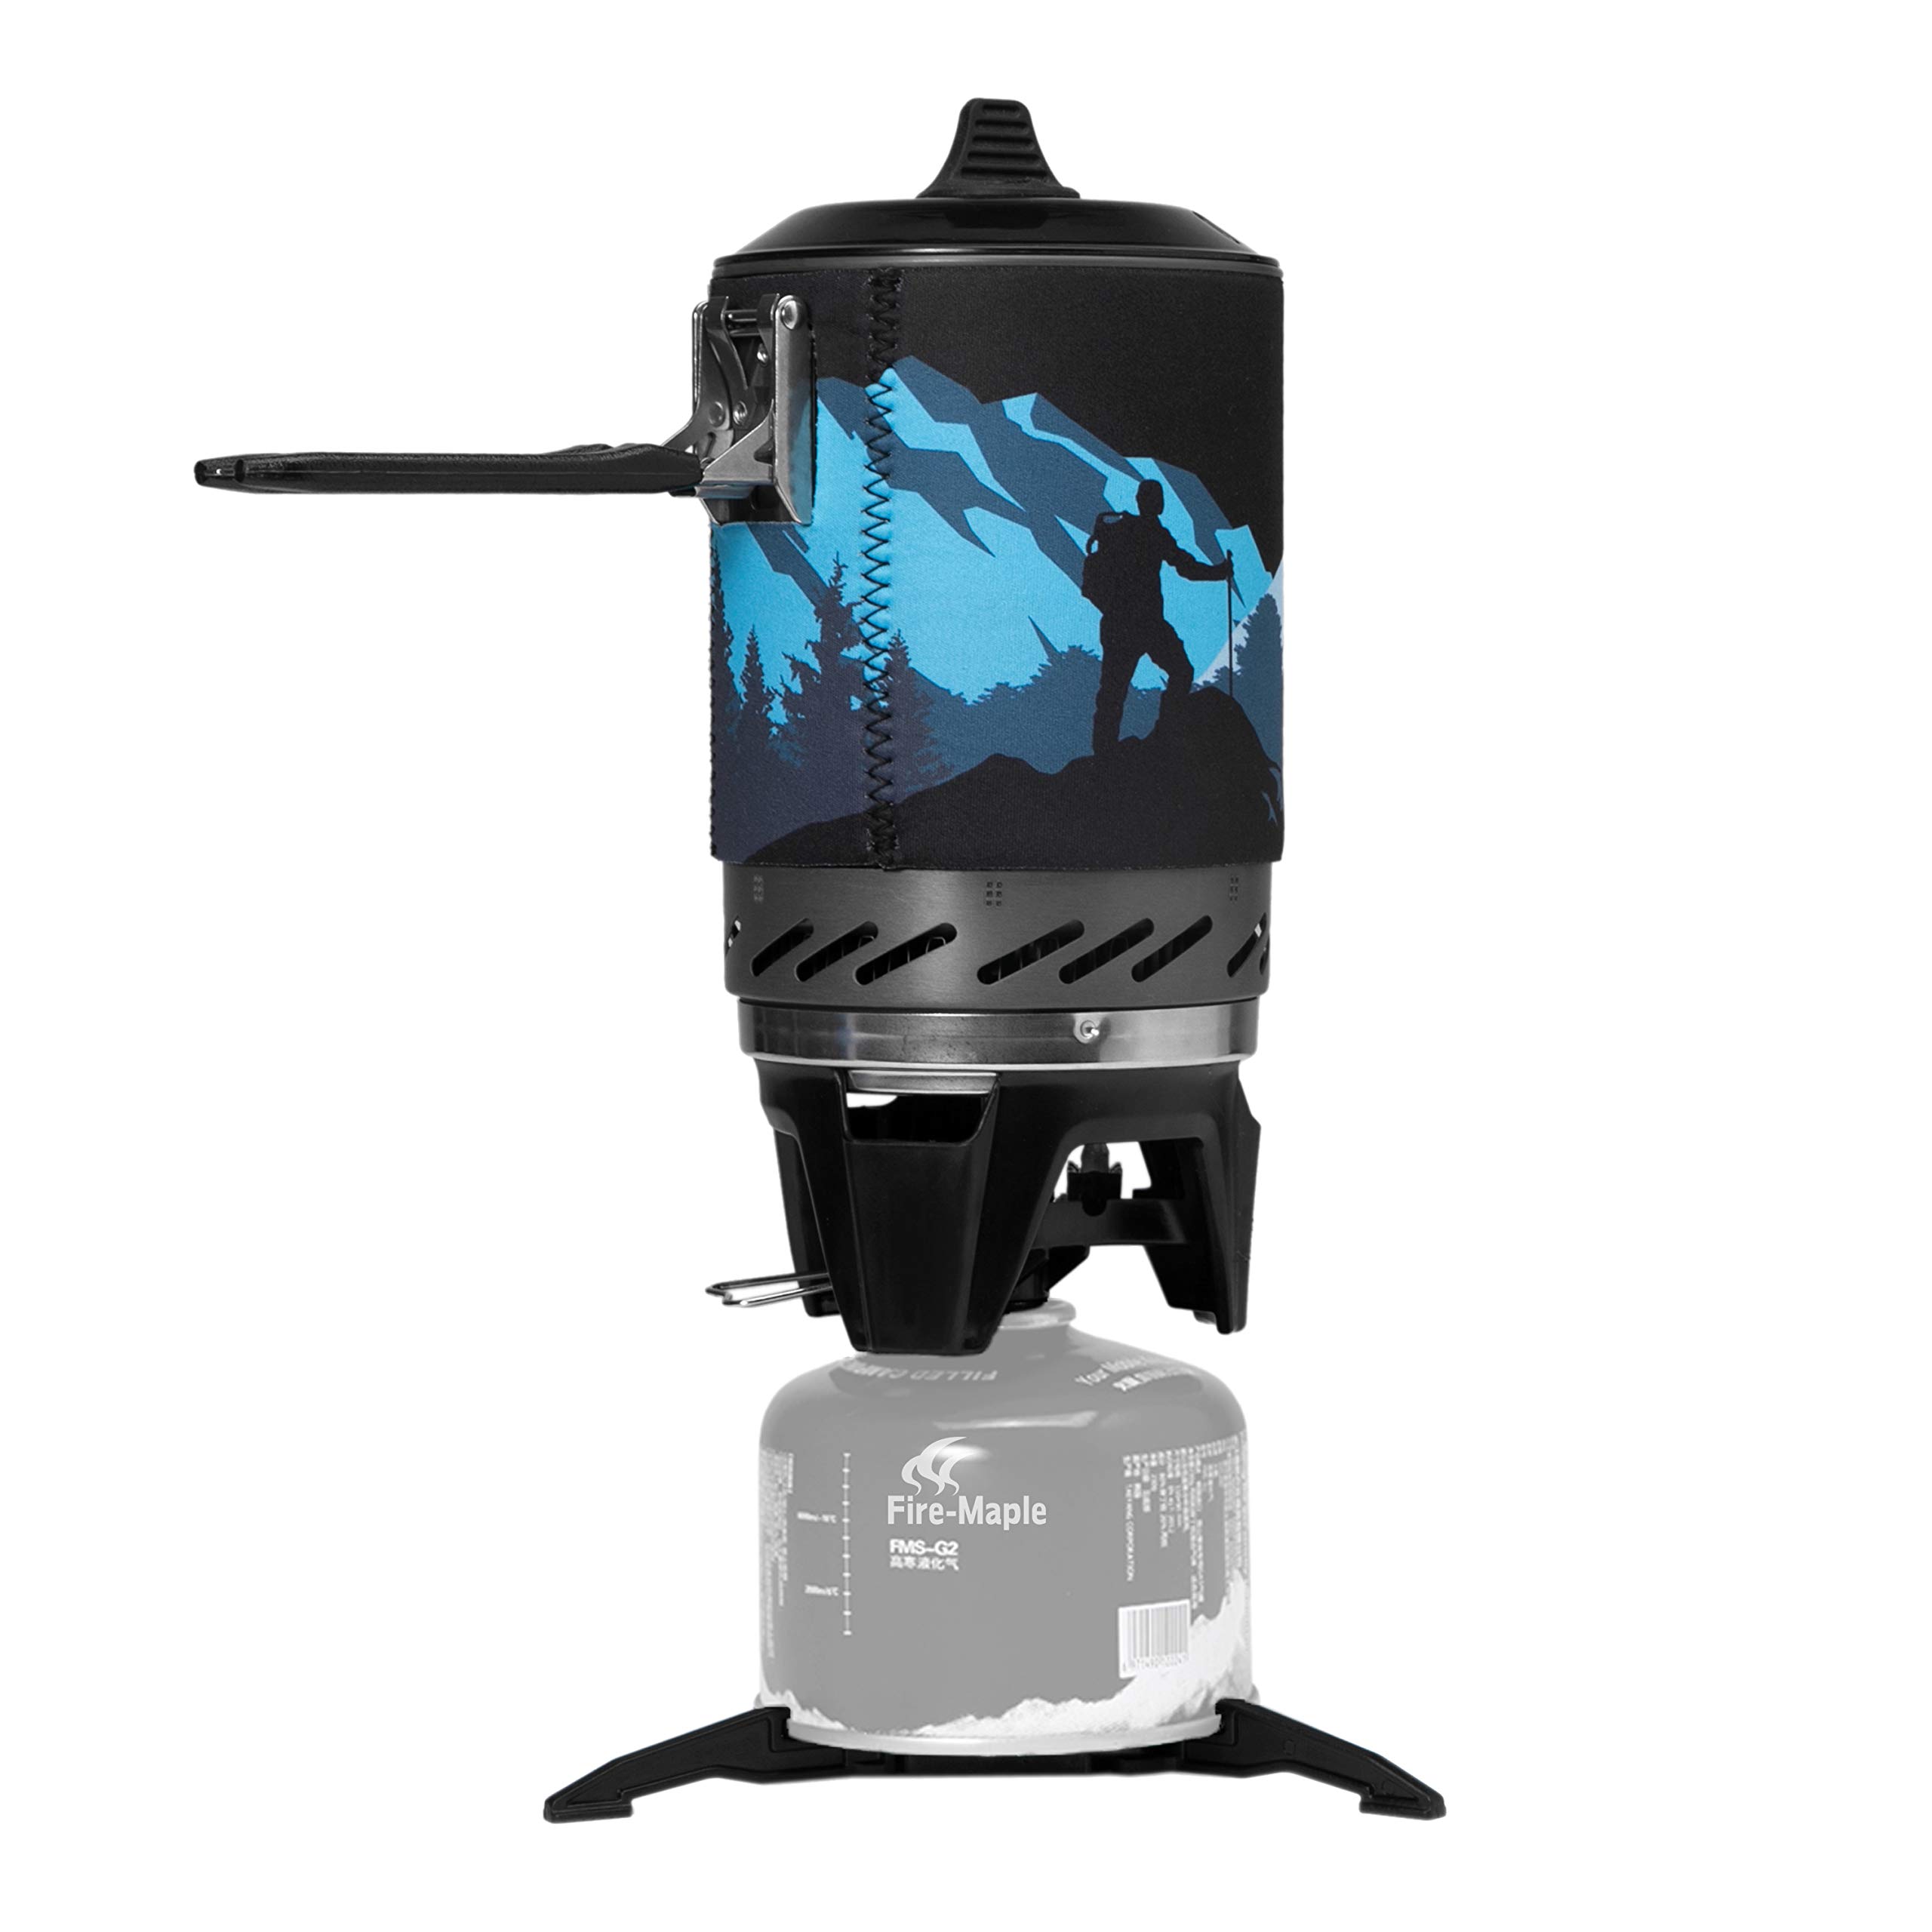 送料無料Fire-Maple Fixed Star X2 Backpacking and Camping Stove System - Outdoor Propane Camp Cooking Gear Portable PotJ